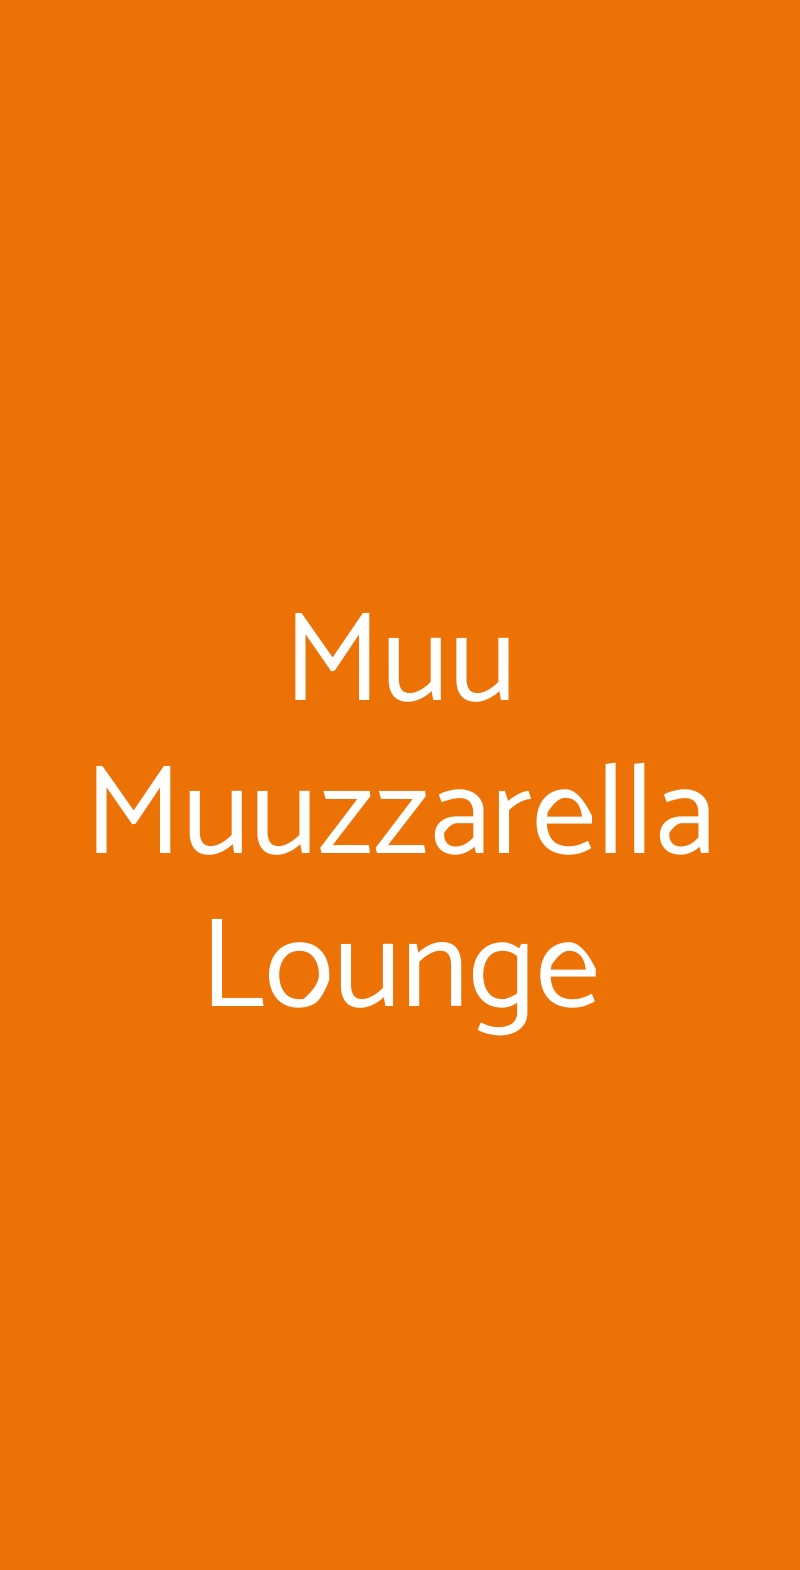 Muu Muuzzarella Lounge Napoli menù 1 pagina